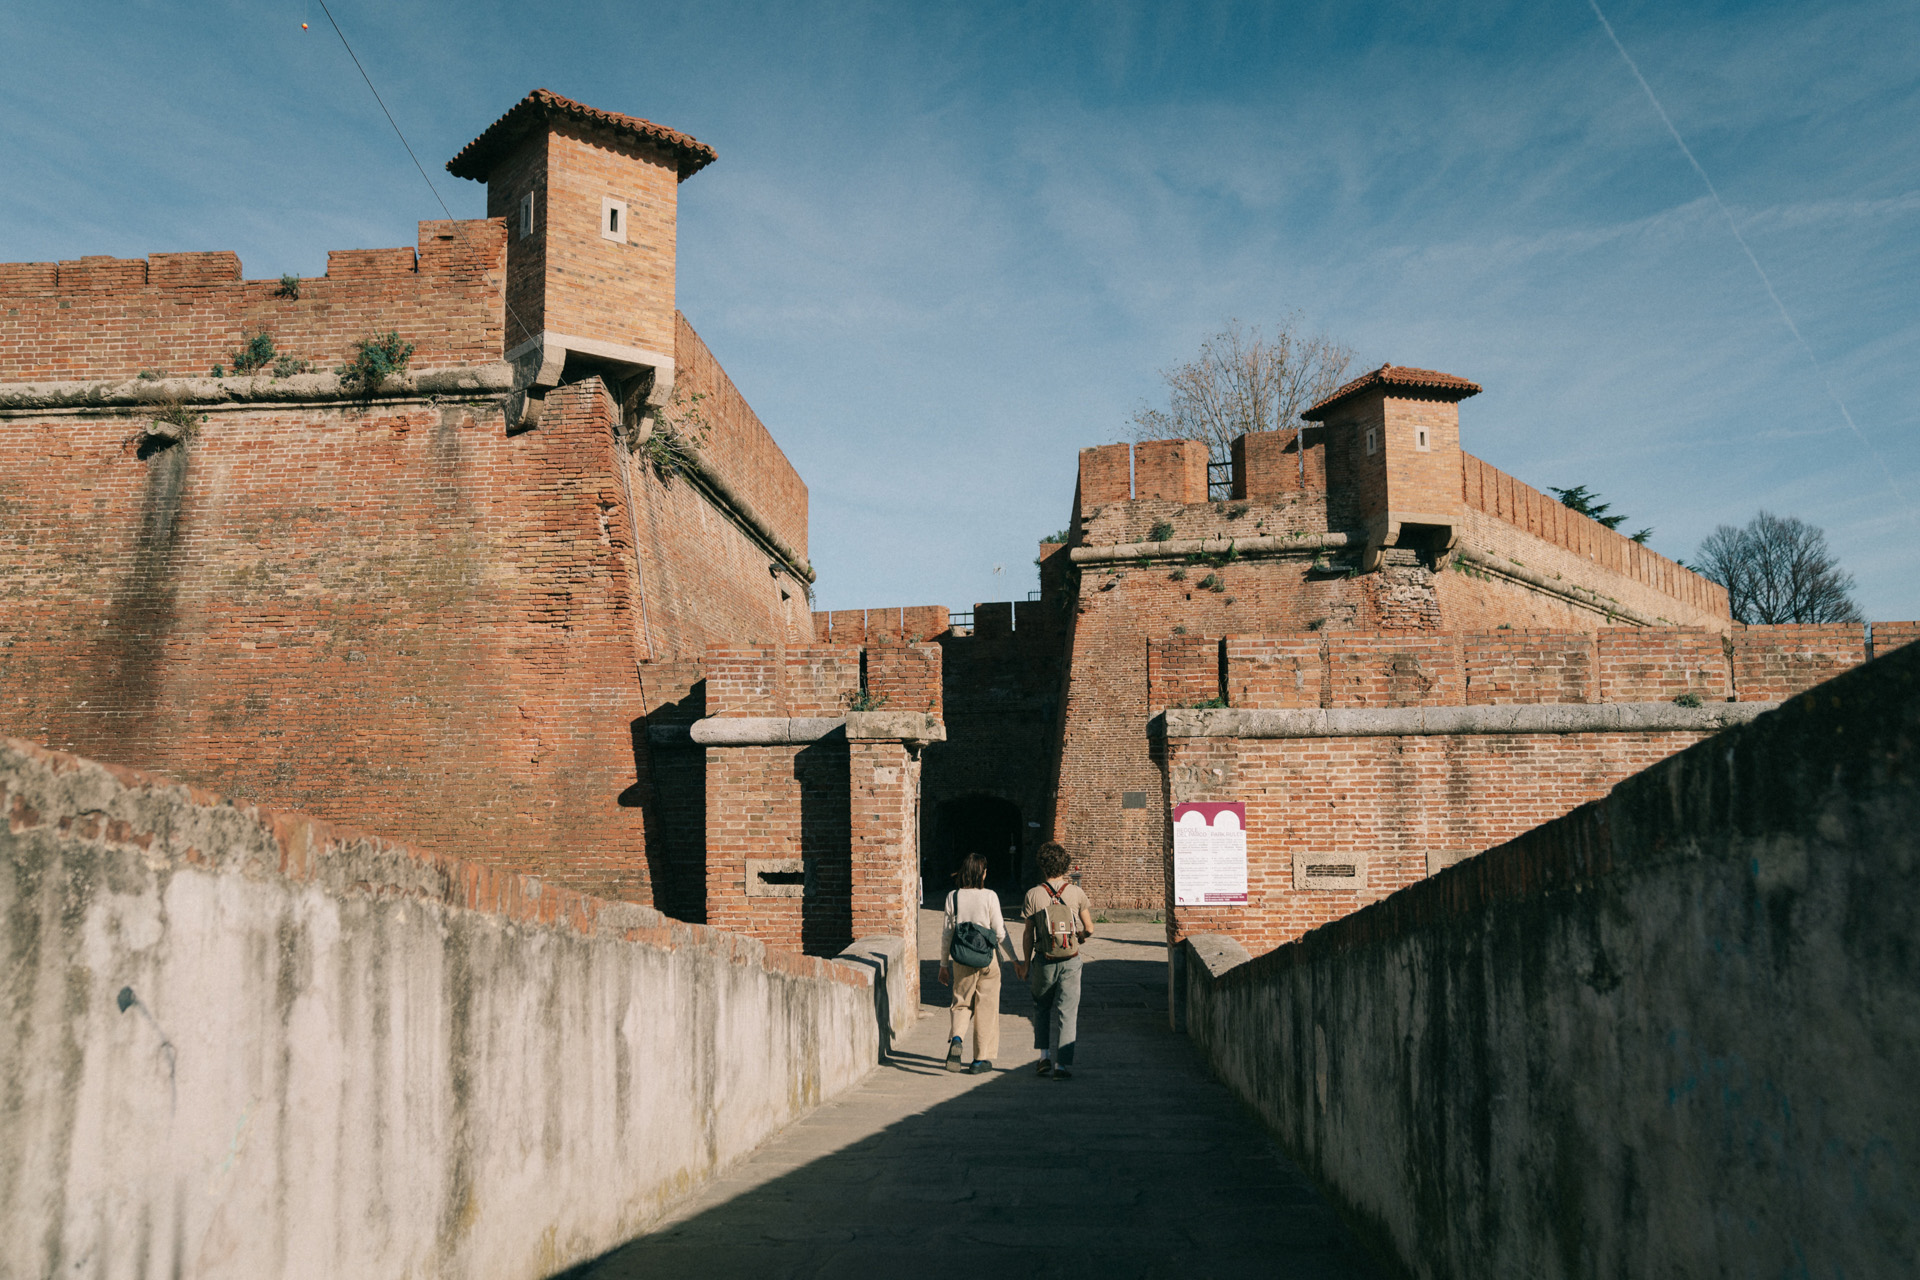 The Fortezza Nuova